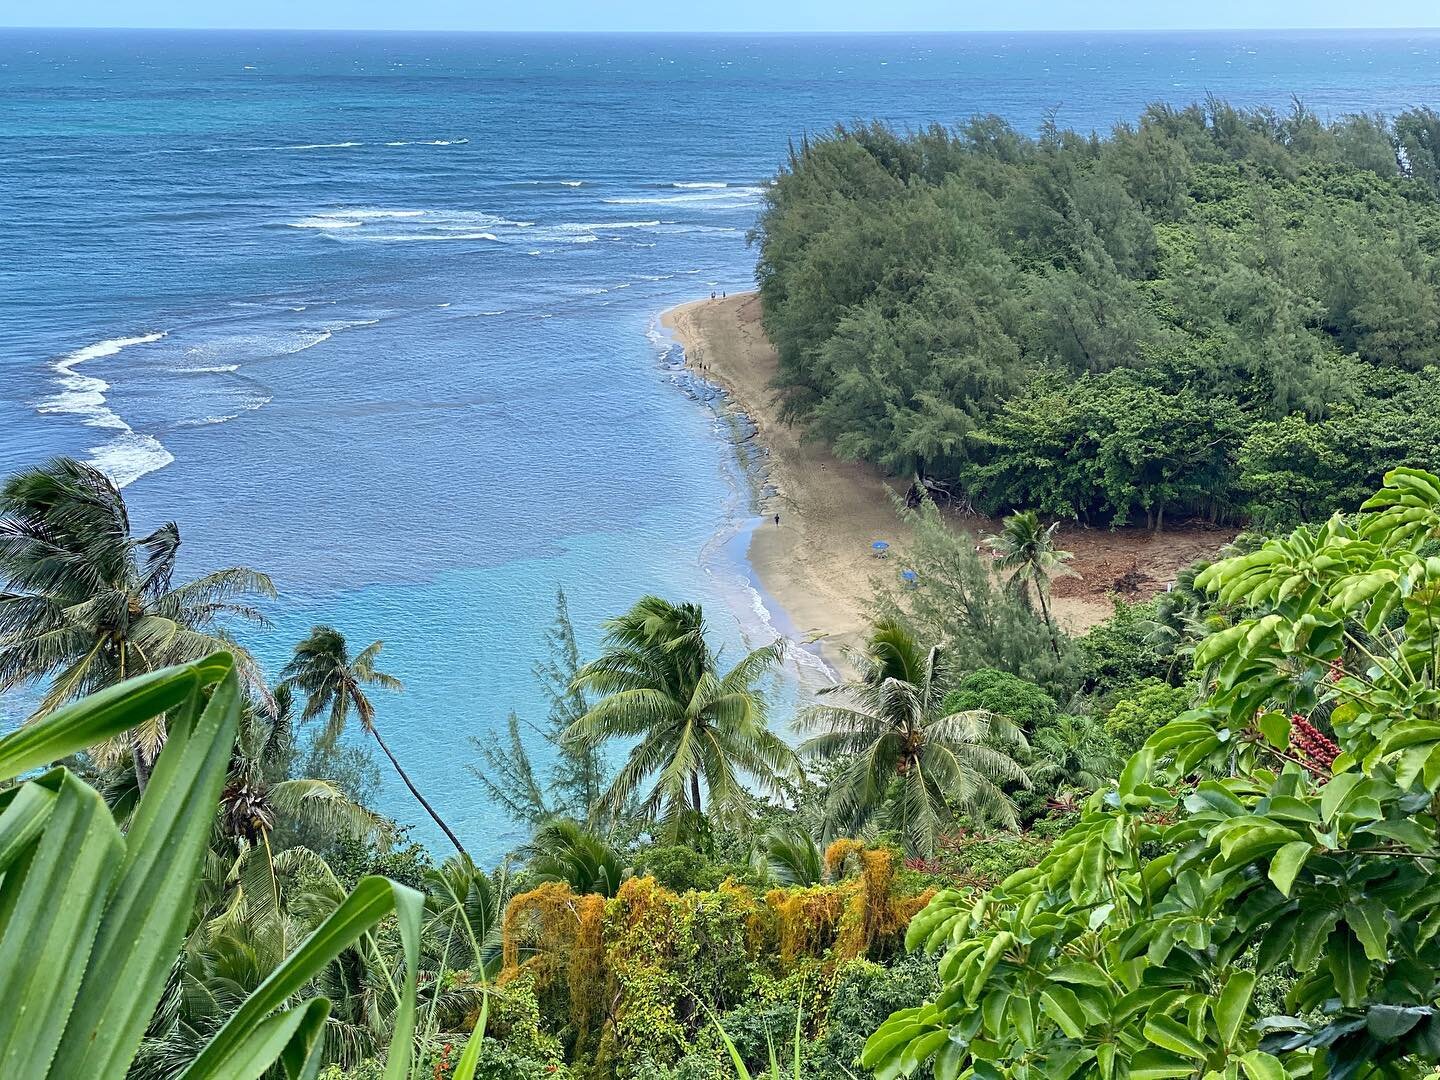 Beach, please! 🏝
1: #keebeach 
2-6: #secretbeach 
7: #hanakapiaibeach 
8-10: #shipwreckbeach 
#kauai #hawaii #beach #sand #ocean #rain #palmtree #rock #nature #paradise #vacation #travel #umbrella #flower #waves #tropical